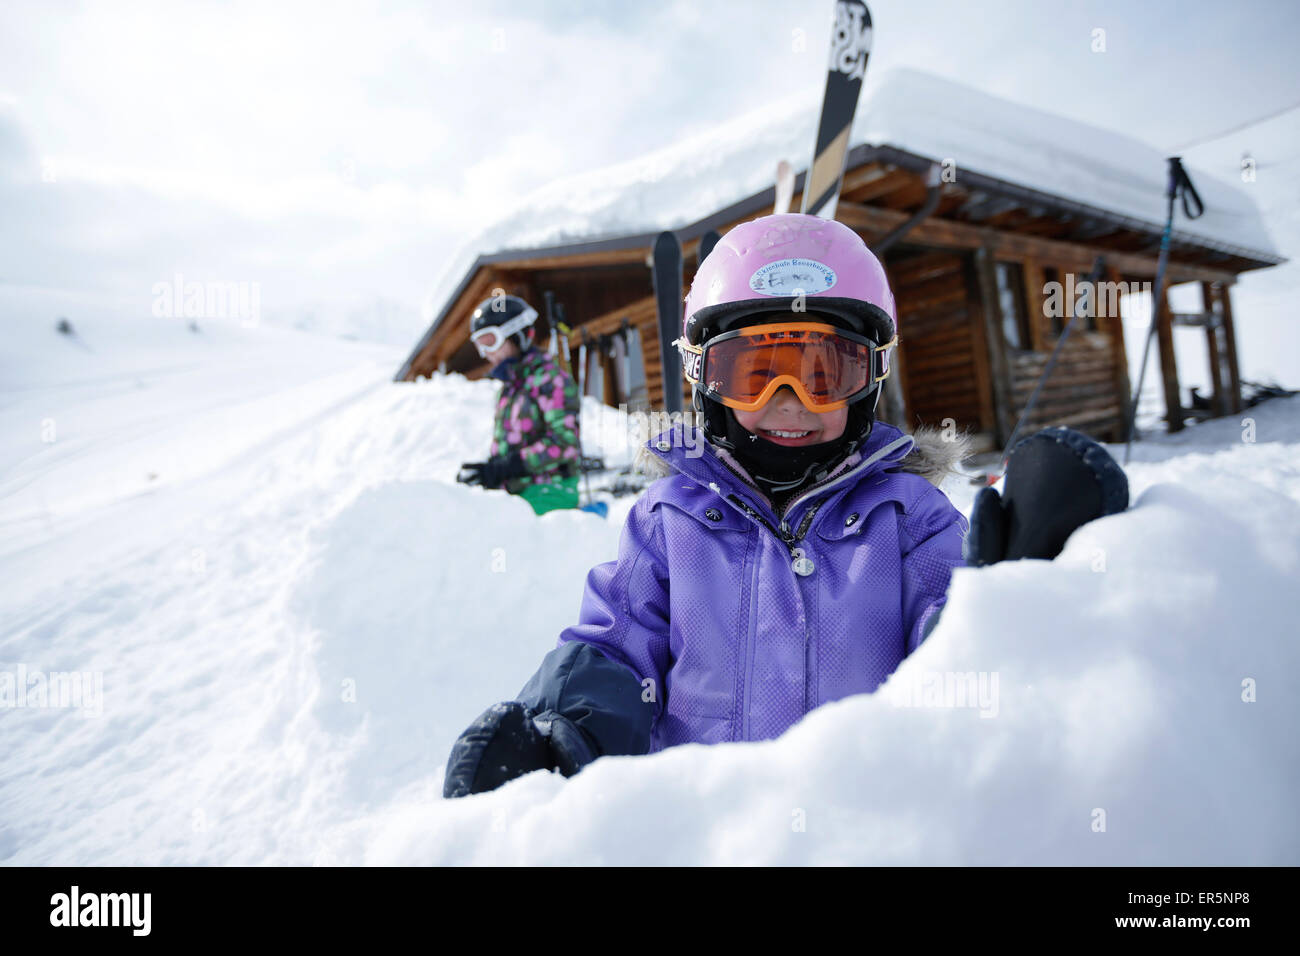 Zwei Kinder im Schnee vor einer Hütte, Skigebiet Ladurns Gossensaß, Südtirol, Italien Stockfoto